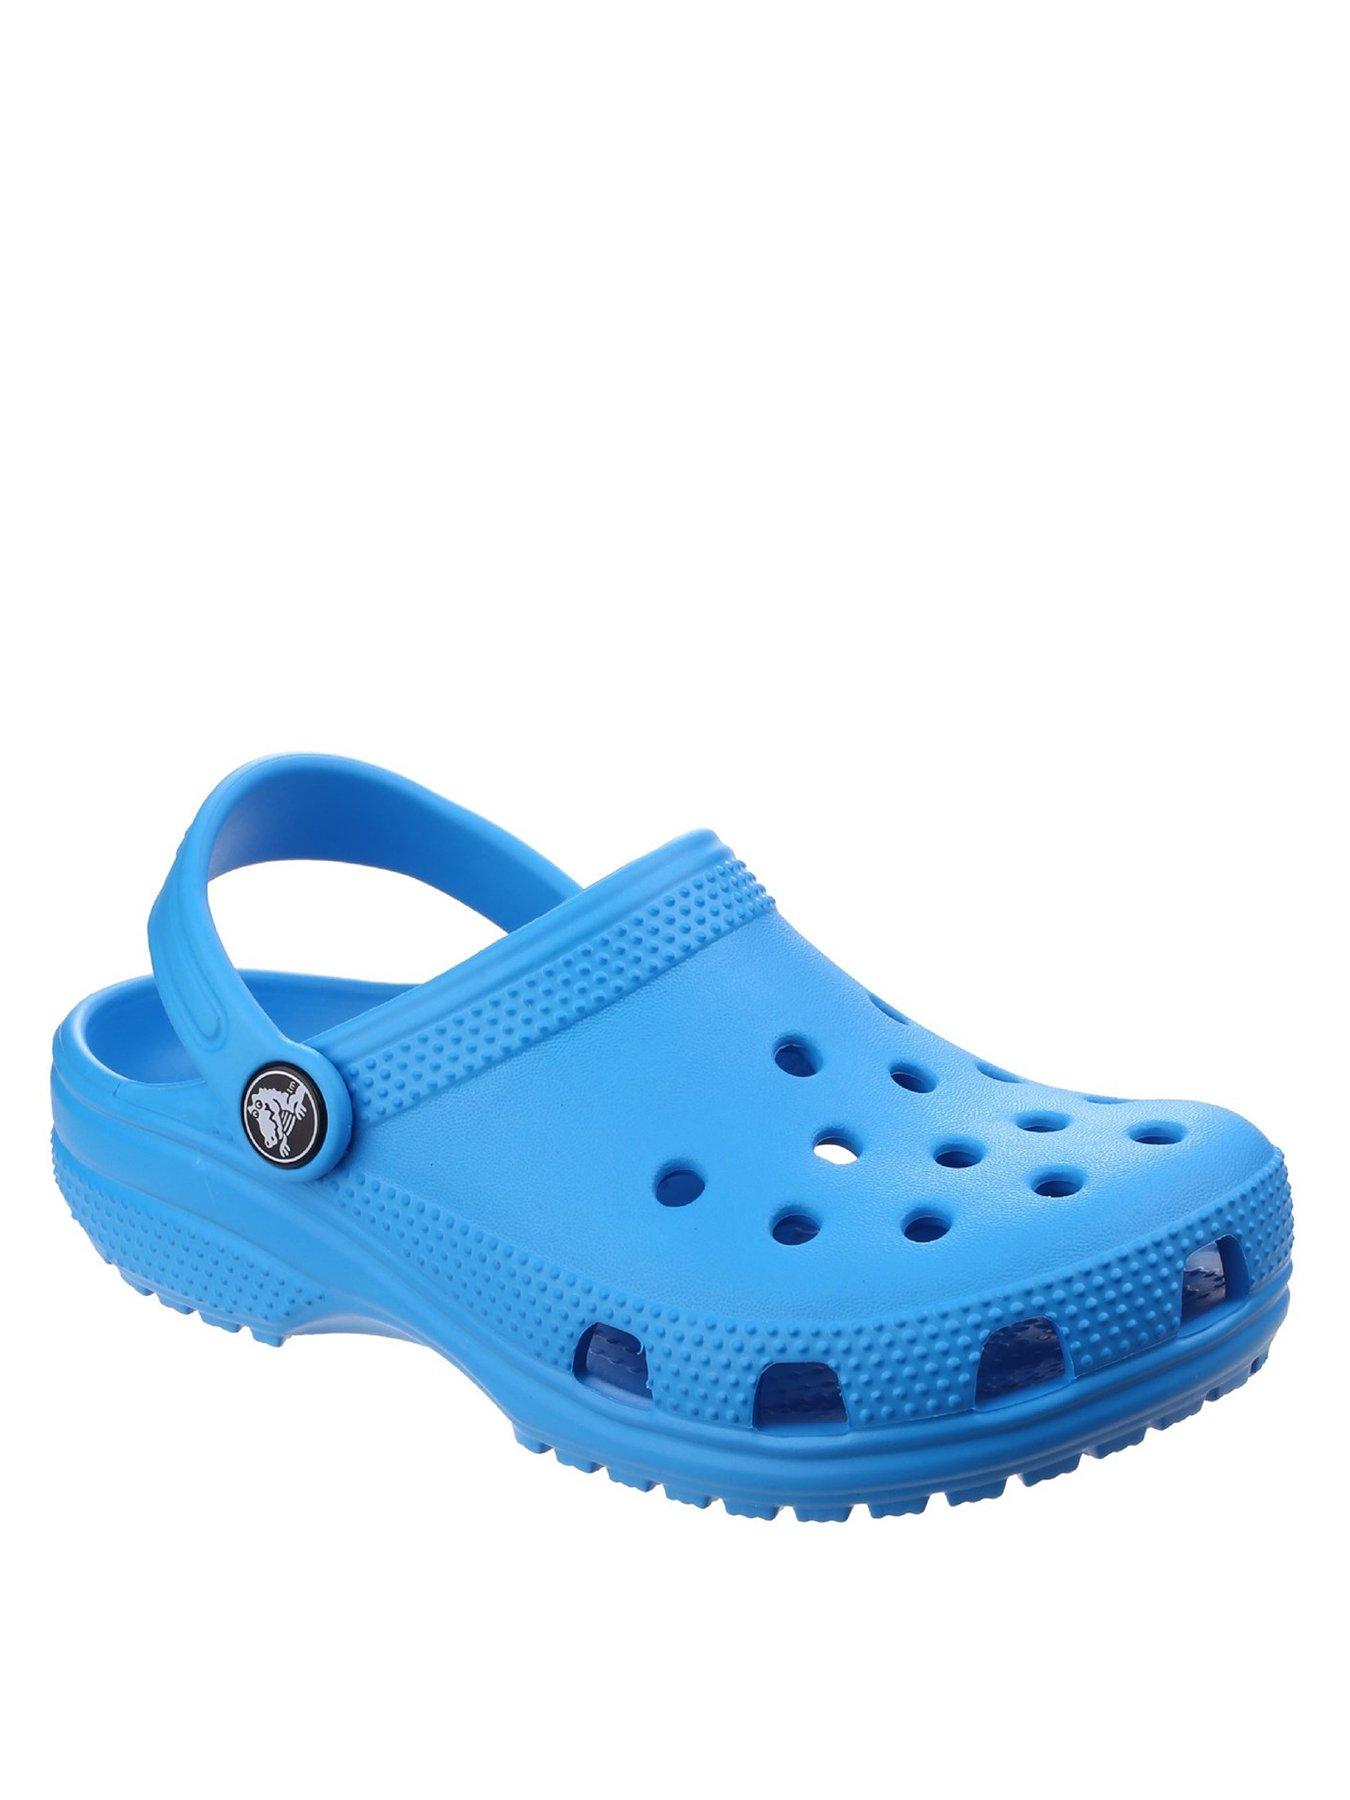 crocs kids size 2